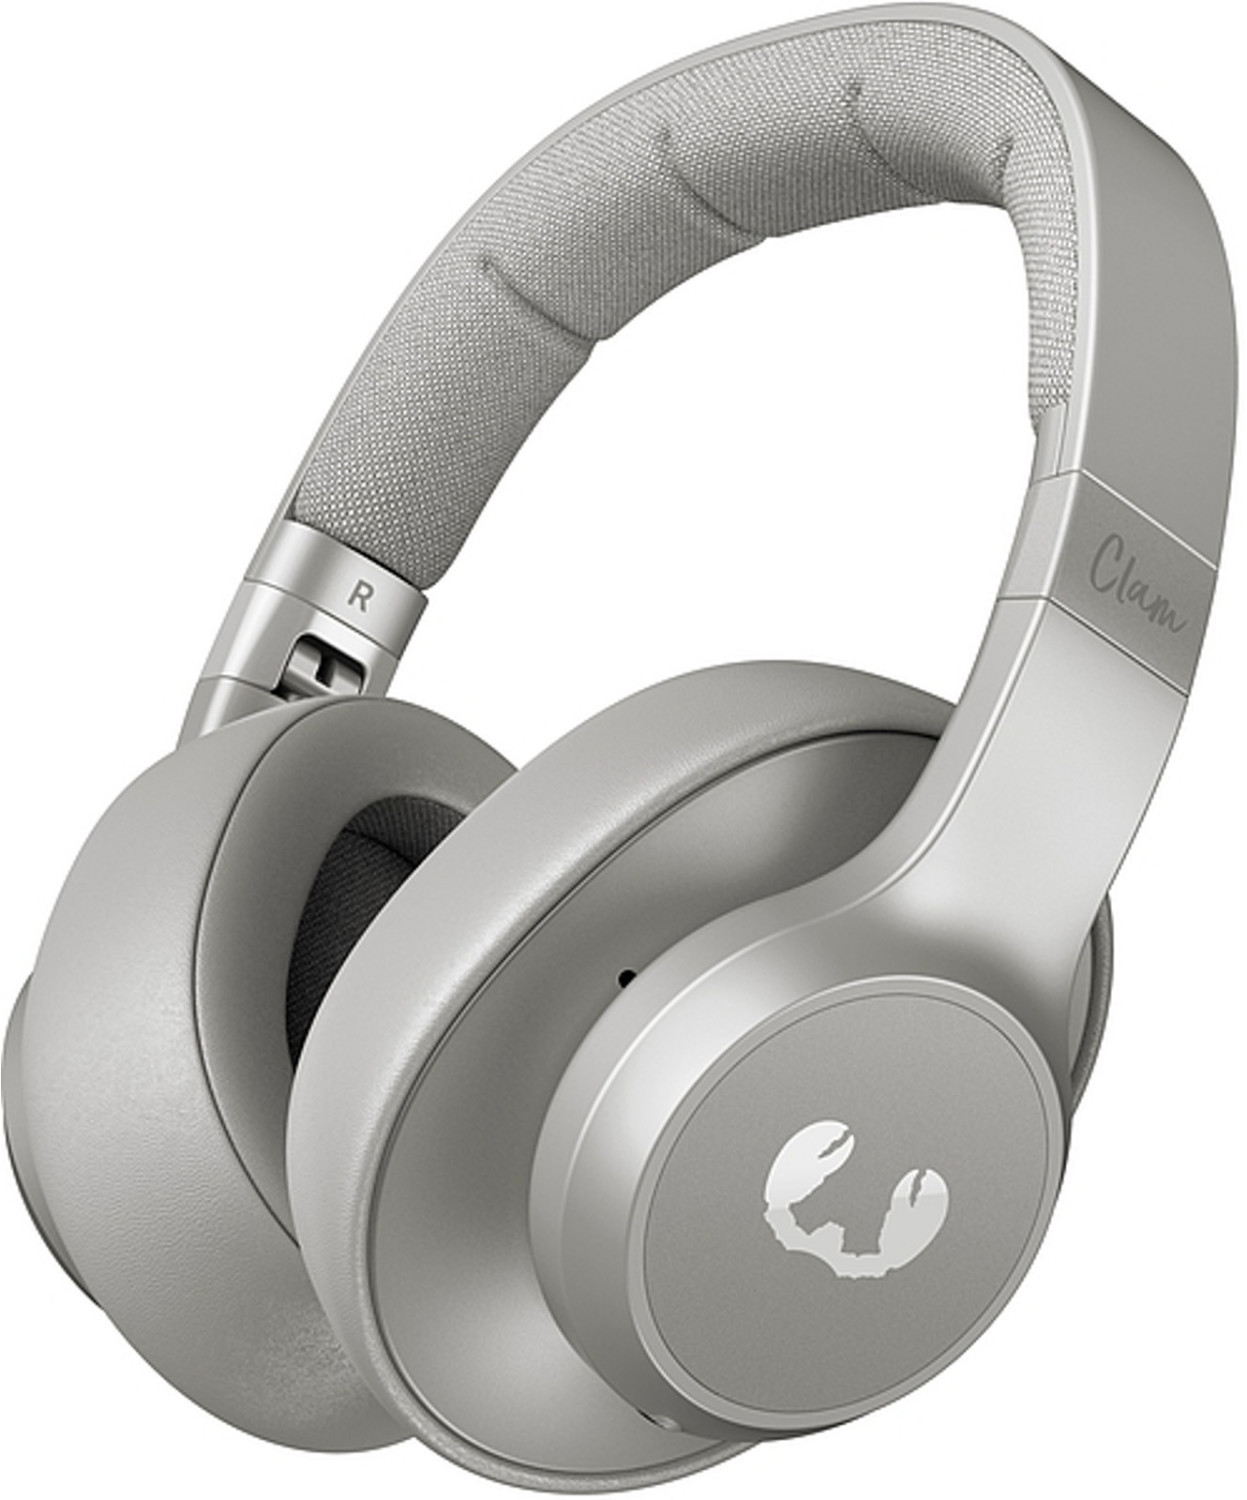 Bild zu Bluetooth Over-Ear Kopfhörer Fresh ’n Rebel Clam ANC für 60,20€ (Vergleich: 71,73€)